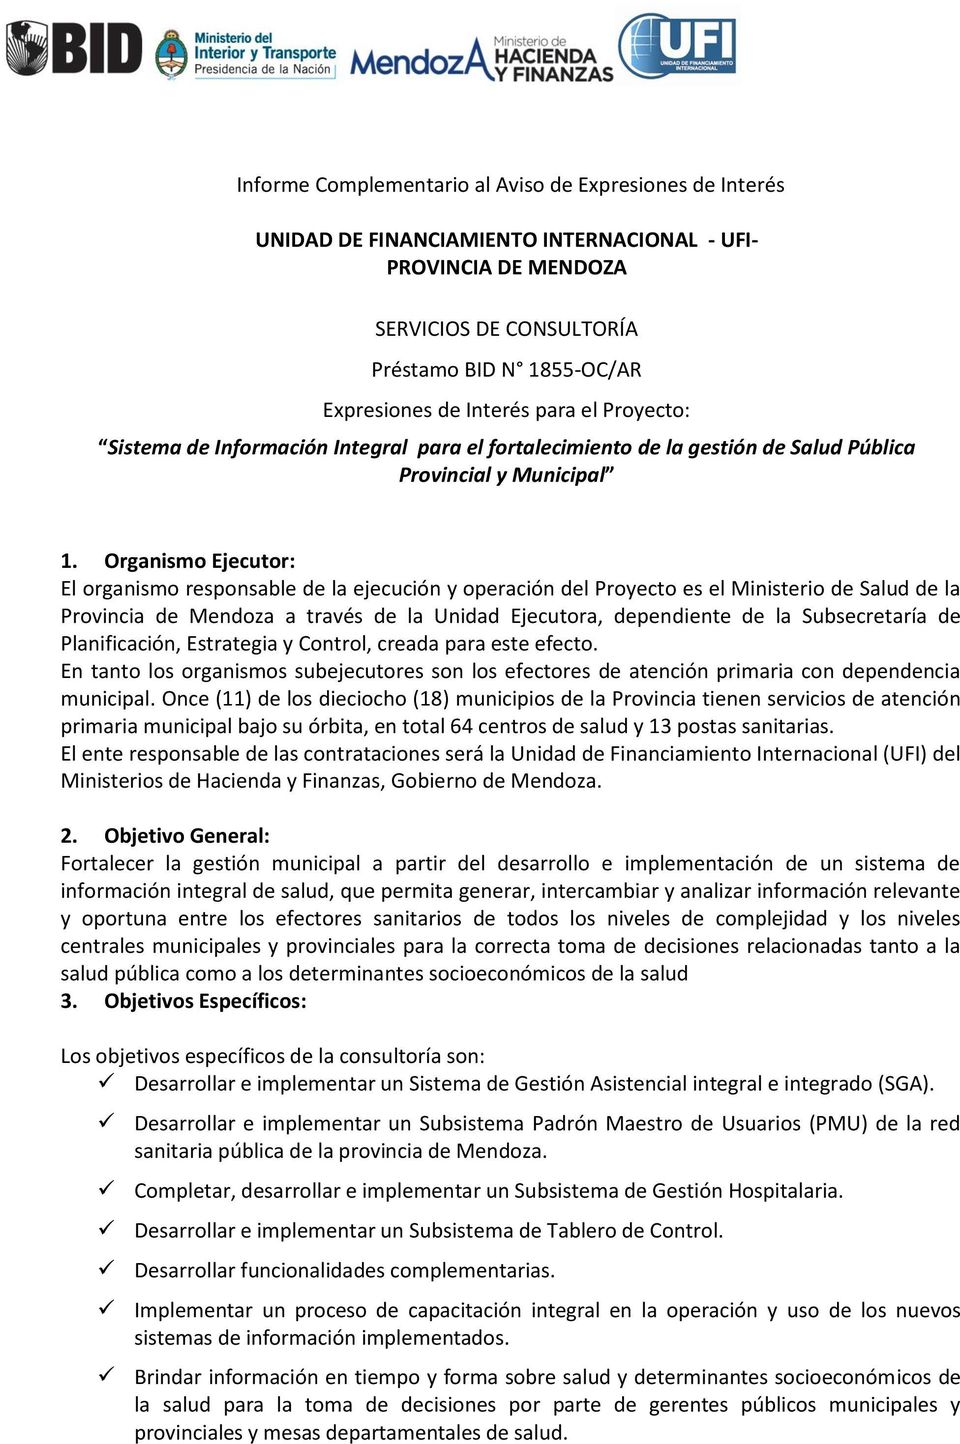 Organismo Ejecutor: El organismo responsable de la ejecución y operación del Proyecto es el Ministerio de Salud de la Provincia de Mendoza a través de la Unidad Ejecutora, dependiente de la